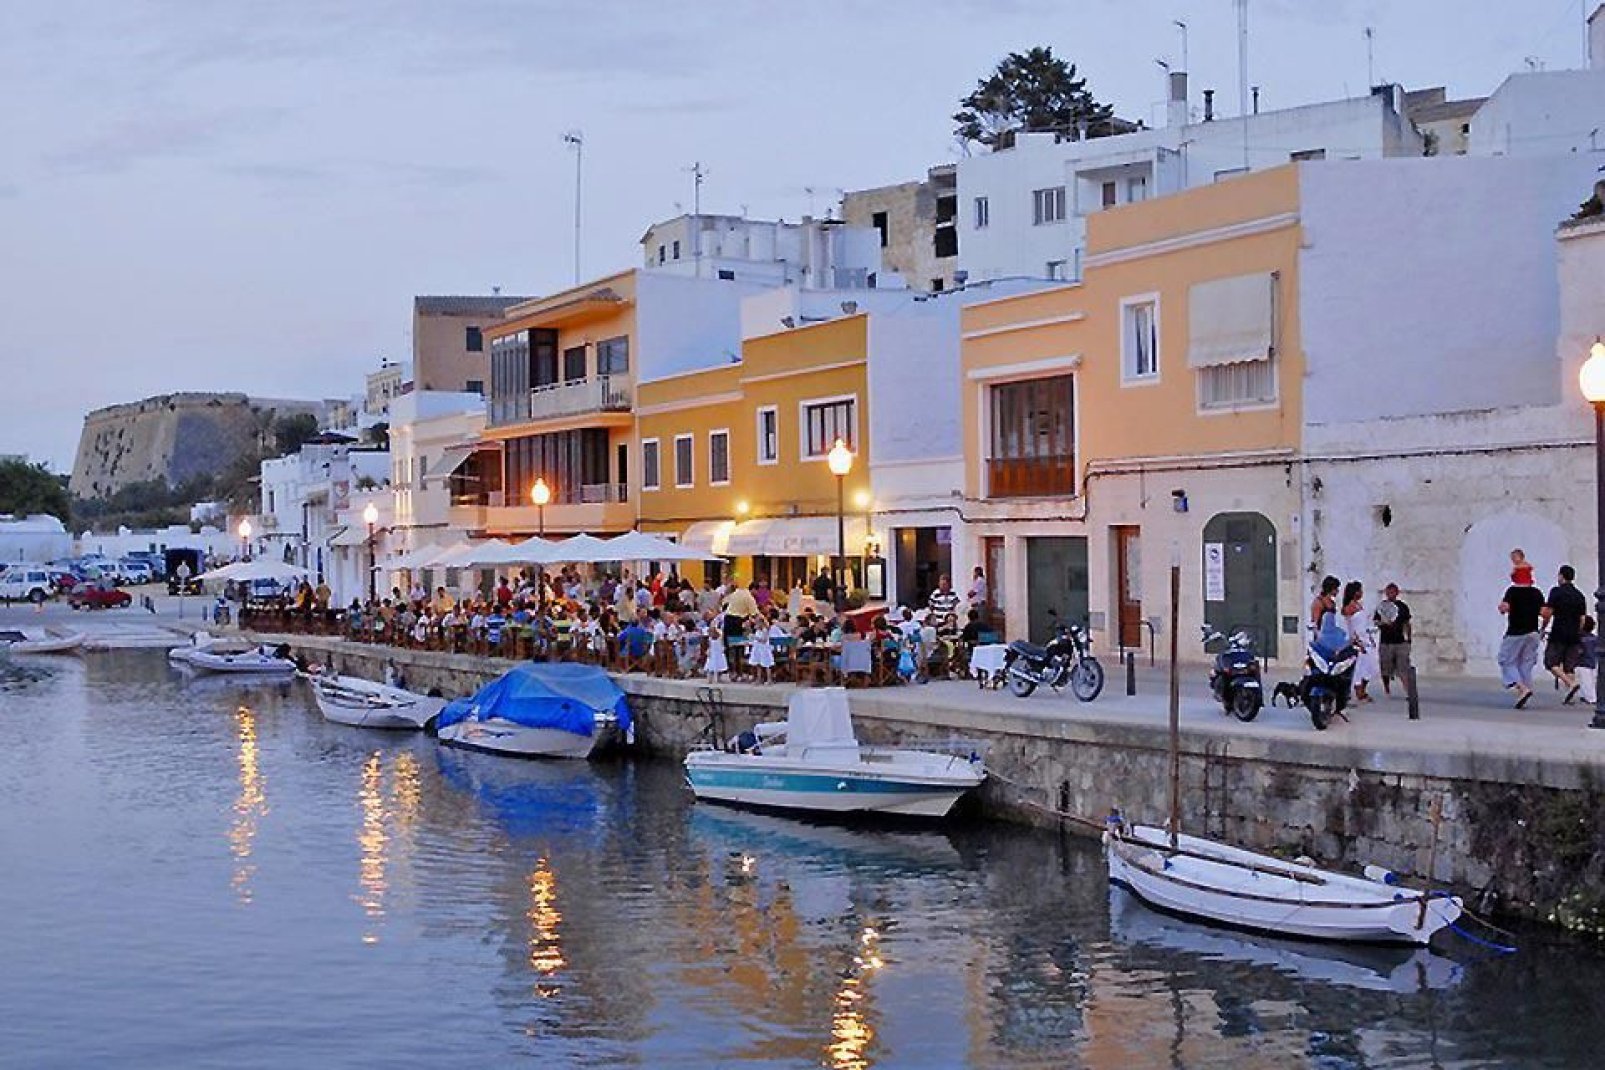 Il molo del porto di Ciutadella presenta numerose piccole caffetterie.